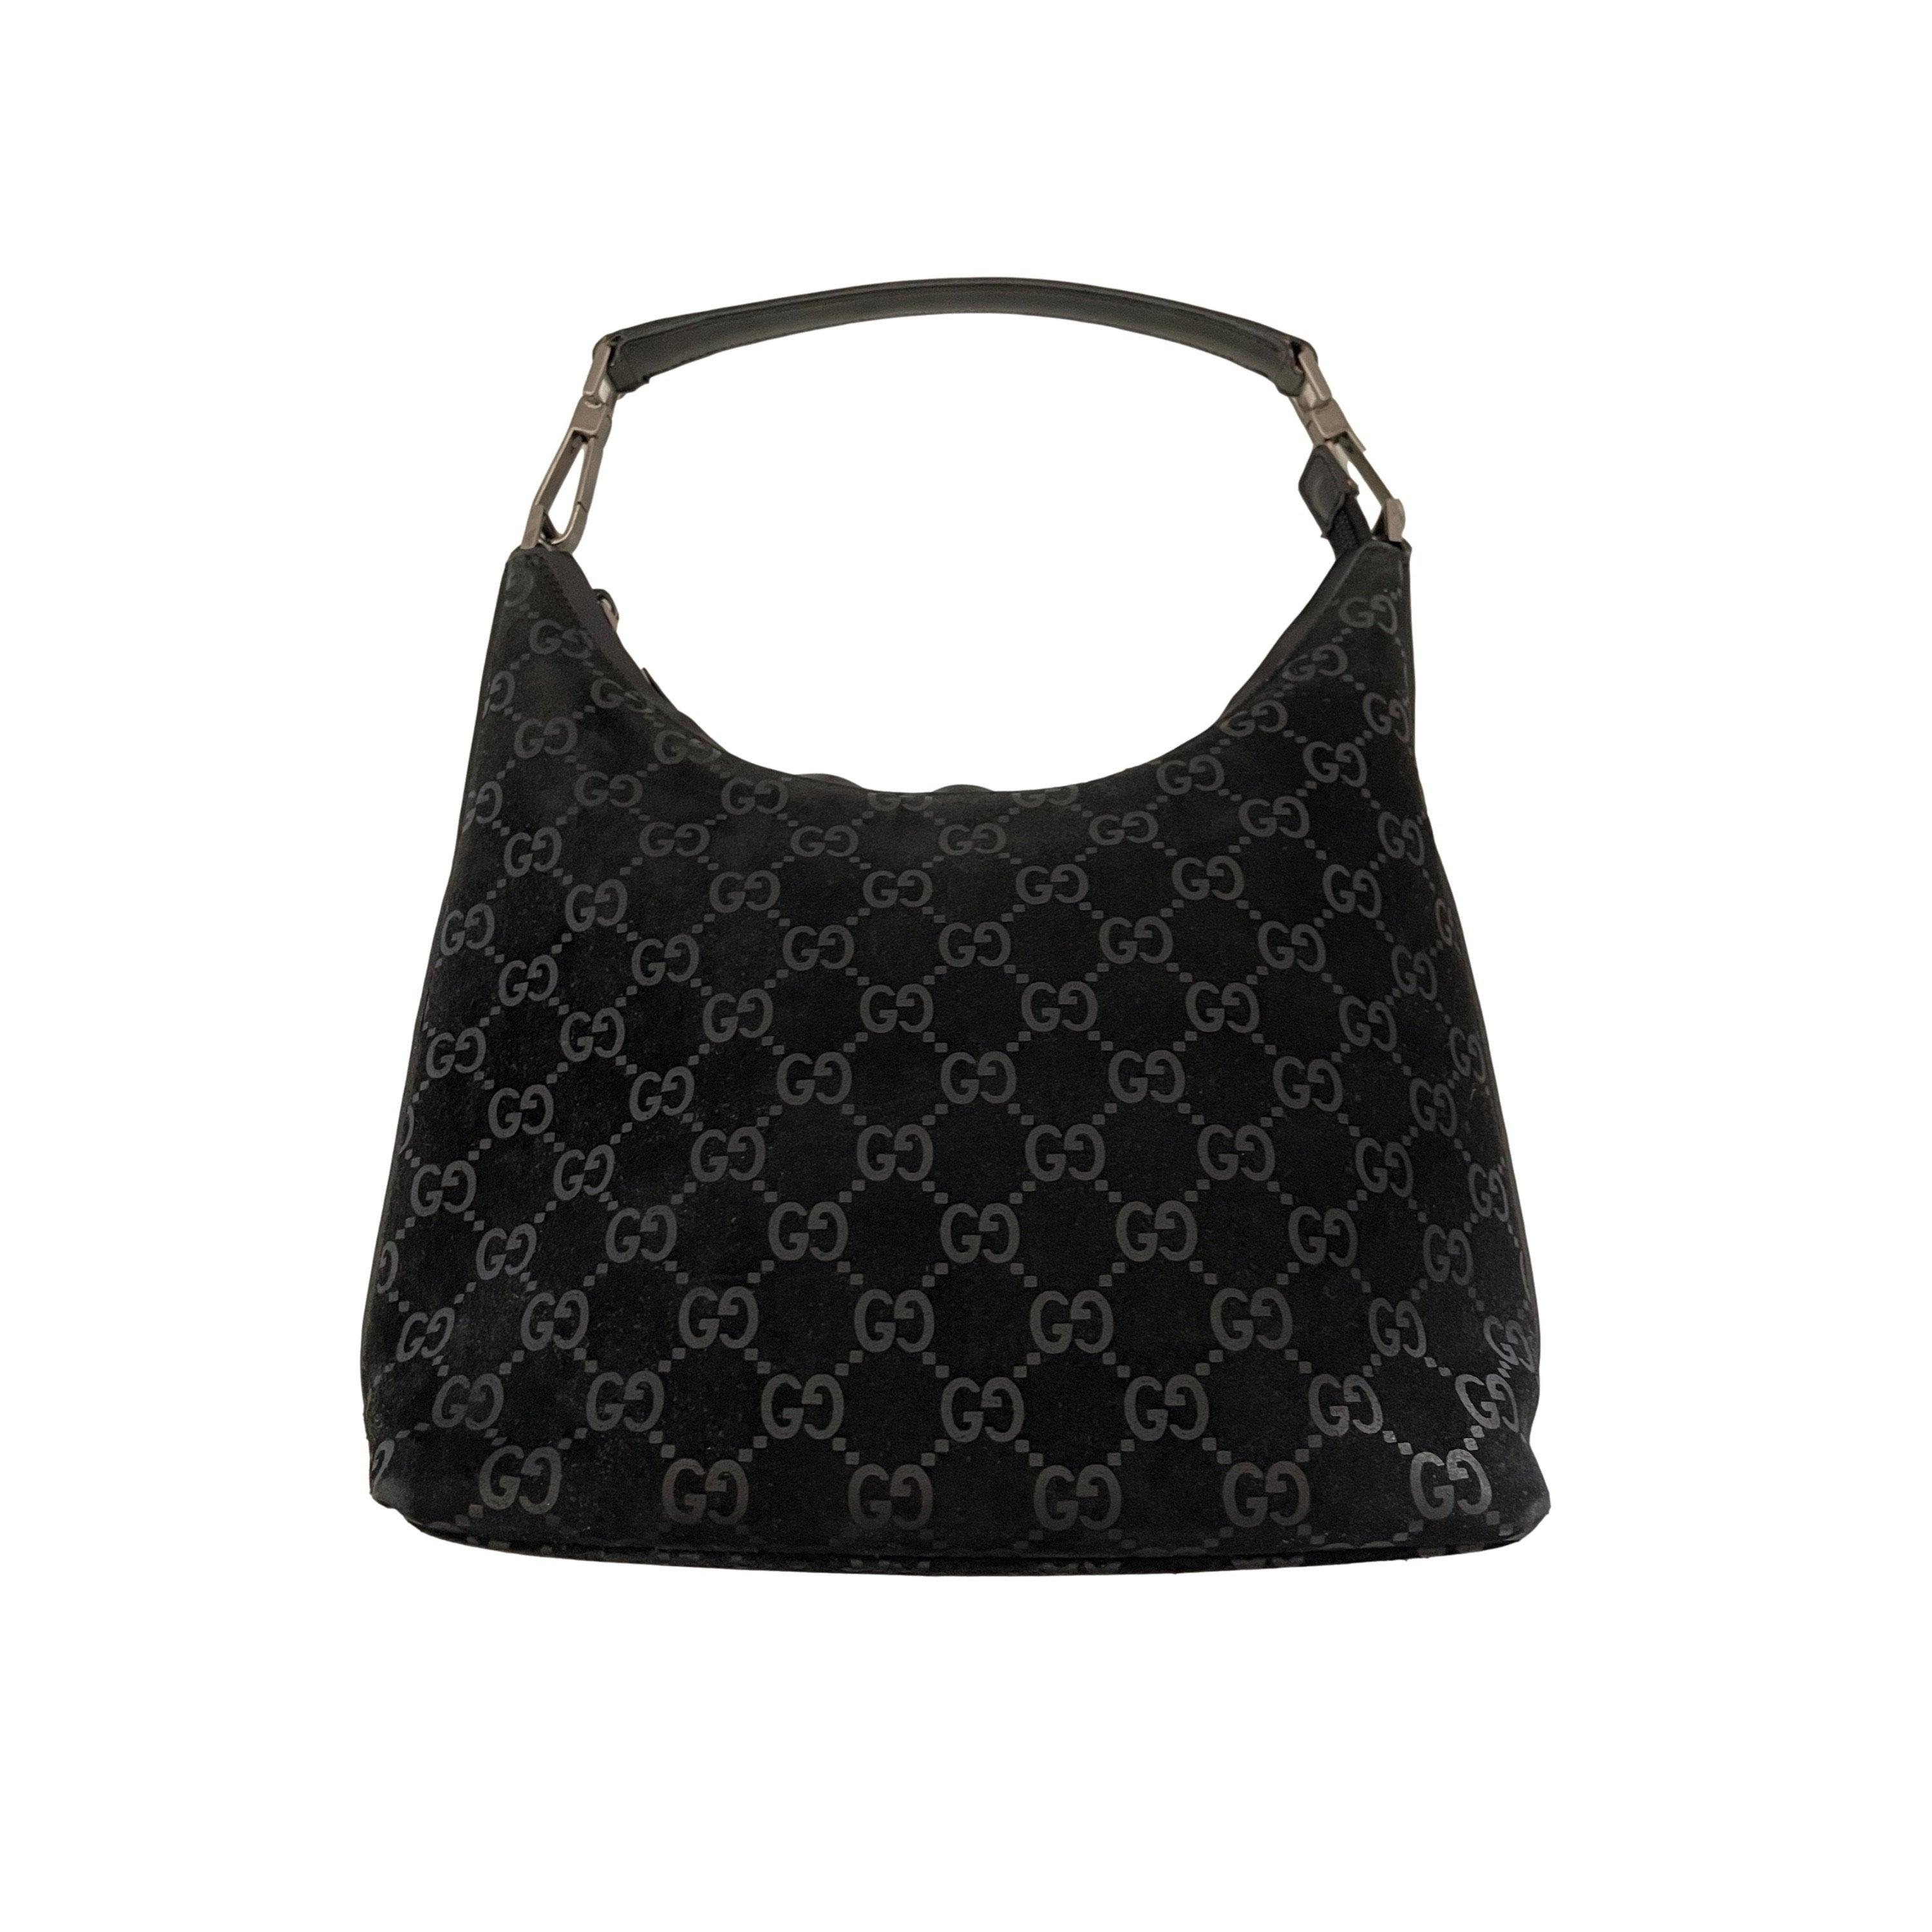 Sold at Auction: Gucci Monogram Black Suede Shoulder Bag Tote